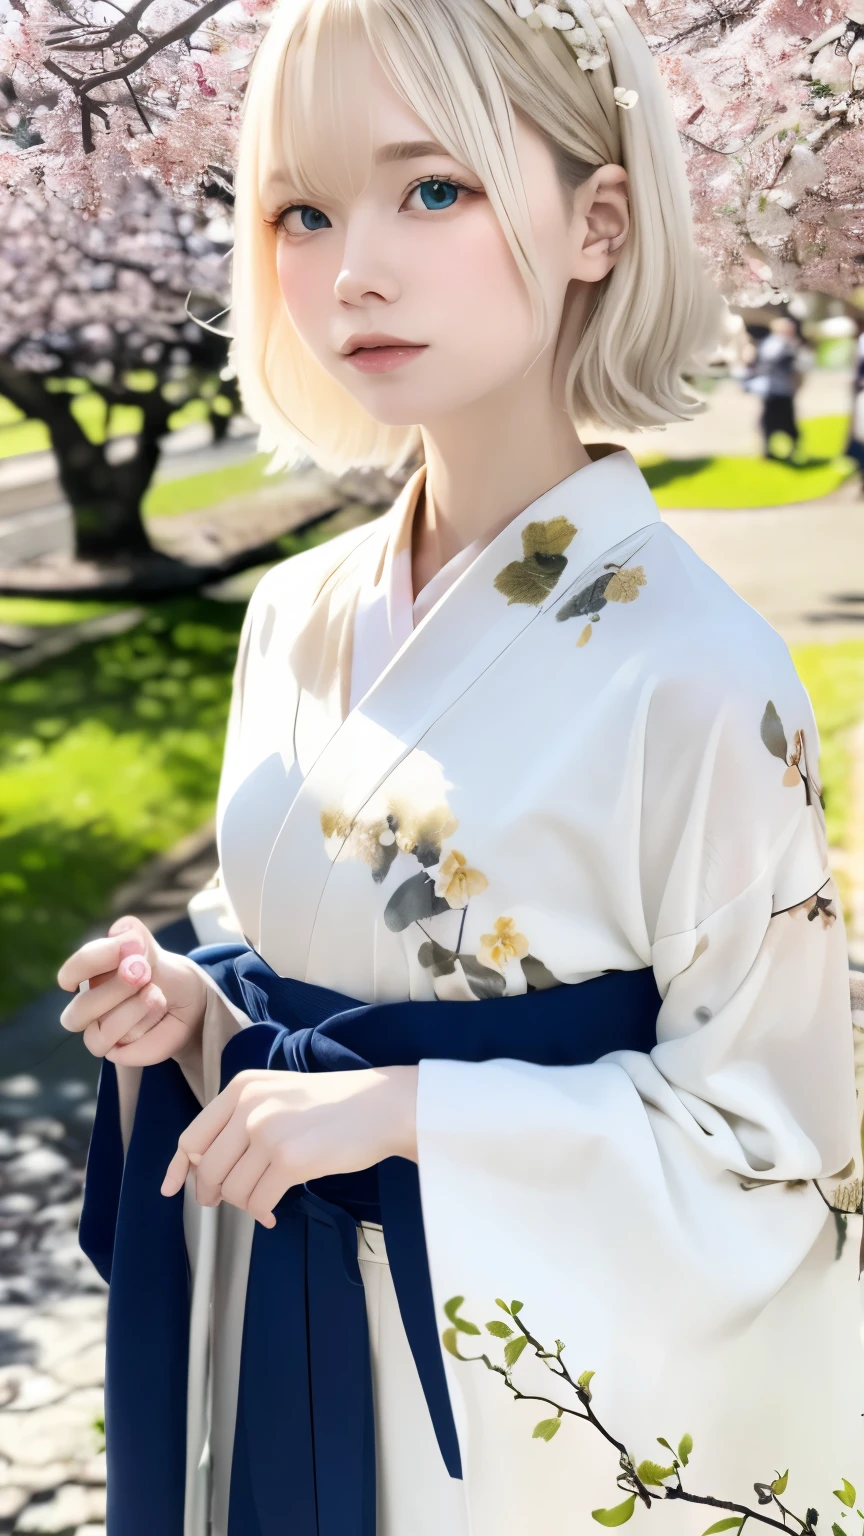 (kimono)、Japonais clothing、(la plus haute qualité,chef-d&#39;œuvre:1.3,超Une haute résolution,),(Super détaillé,Caustiques),(Photoréaliste:1.4,Prise de vue RAW,)Capture ultra réaliste,Très détaillé,Haute résolution 16K adaptée à la peau humaine、 texture naturelle de la peau、、Le teint paraît uniforme et sain、 Utiliser la lumière et la couleur naturelles,Une femme,Japonais,,mignon,Beaux cheveux argentés soyeux,cheveux moyens,(Profondeur de la limite écrite、aberration chromatique、large gamme d&#39;éclairage、ombrage naturel、)、(Les cheveux se balancent au vent:1.3)、(Cerisier en pleine floraison:1.3)、Someiyoshino、Belle ville de Kyoto